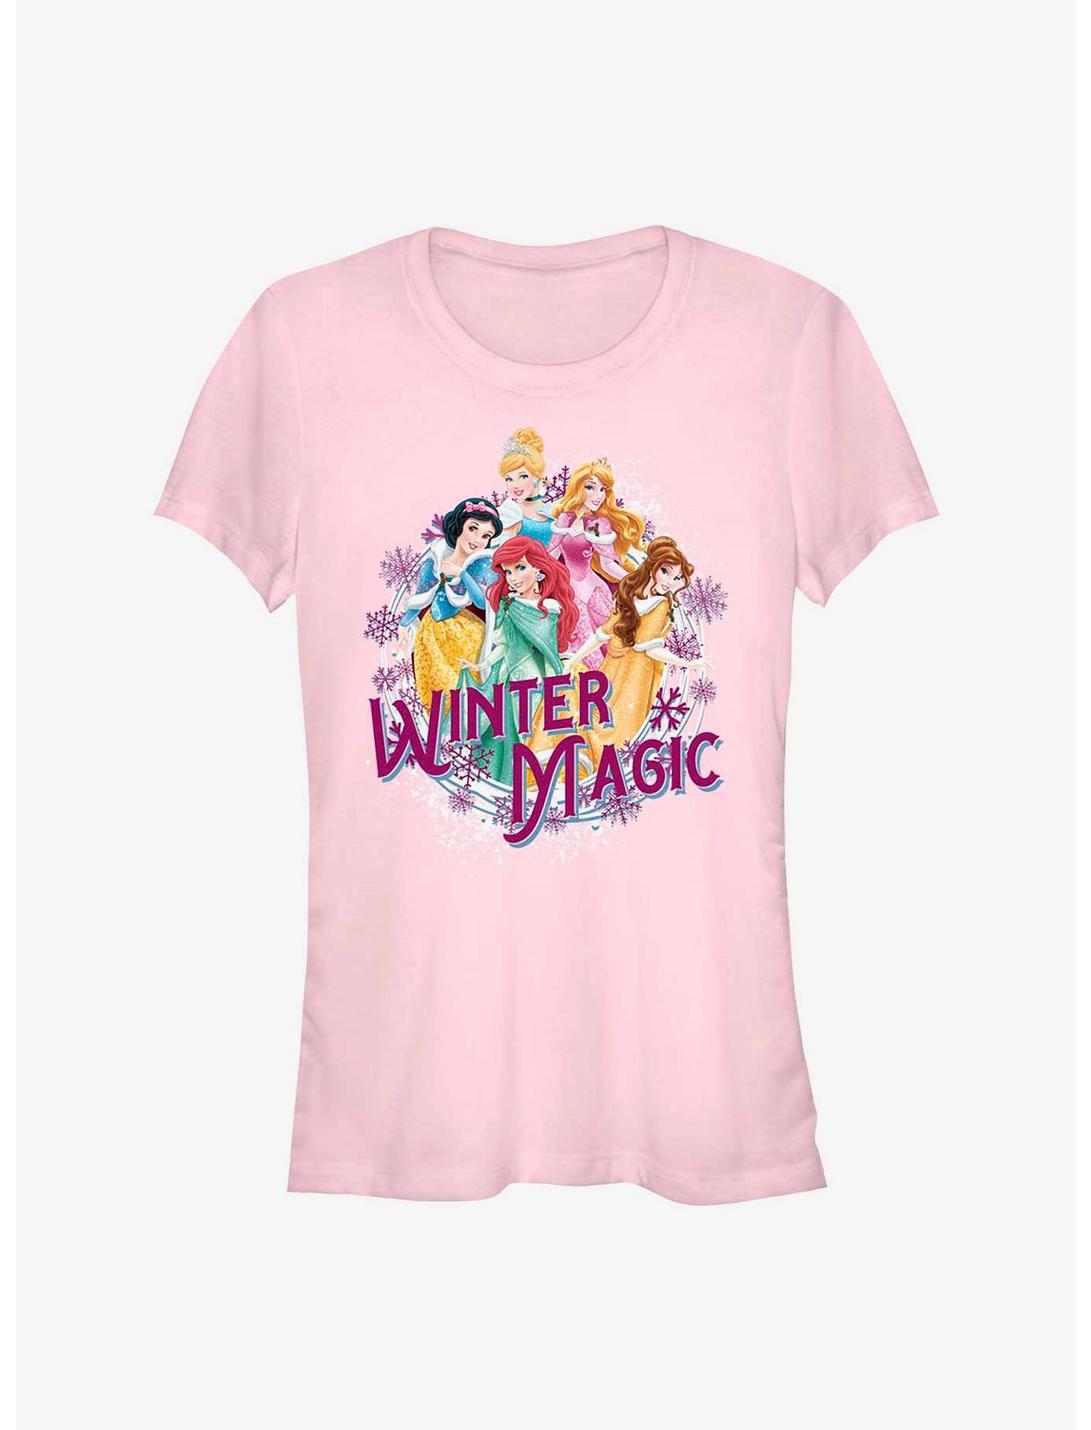 Disney Princess Winter Magic Girls T-Shirt, LIGHT PINK, hi-res